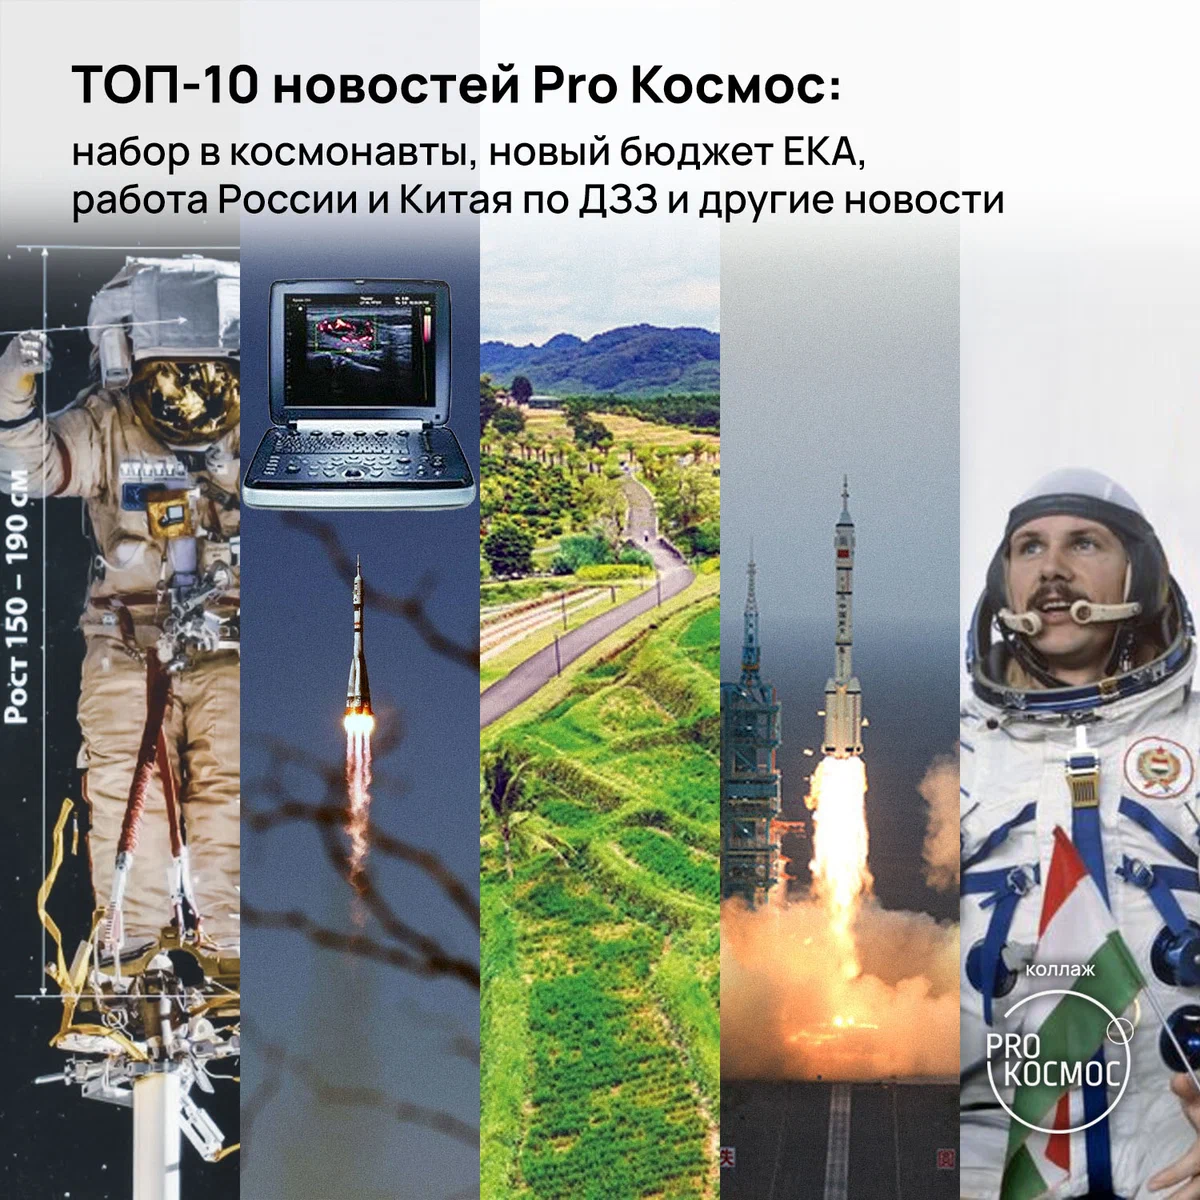 ТОП-10 новостей Pro Космос: набор в космонавты, новый бюджет ЕКА, работа России и Китая по ДЗЗ и другие новости height=1200px width=1200px